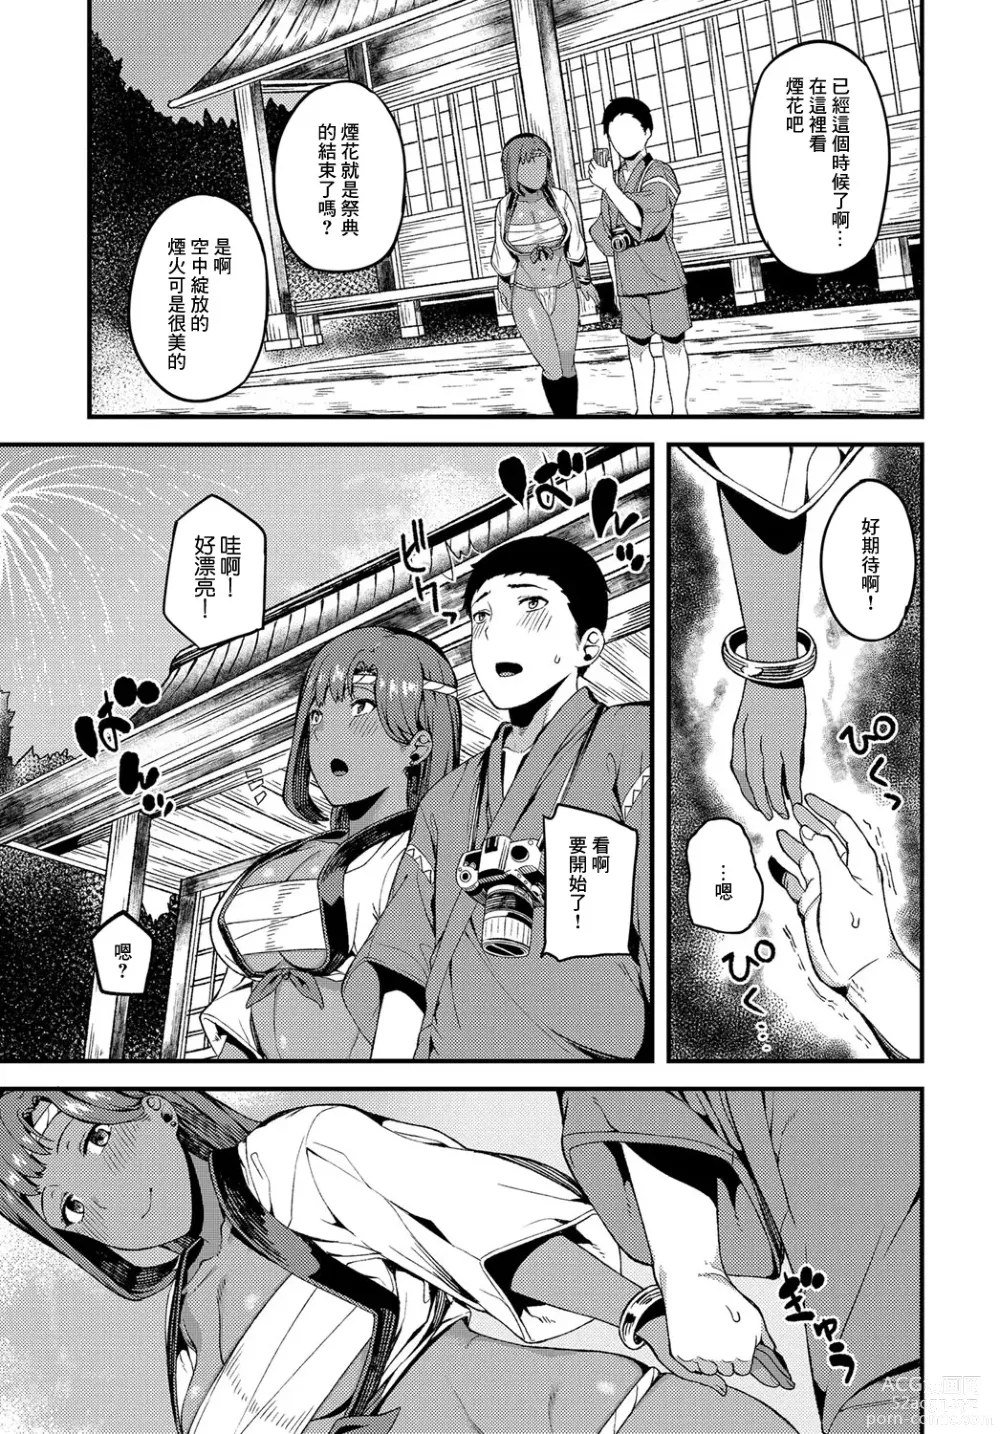 Page 21 of manga Natsukoi Hanabi